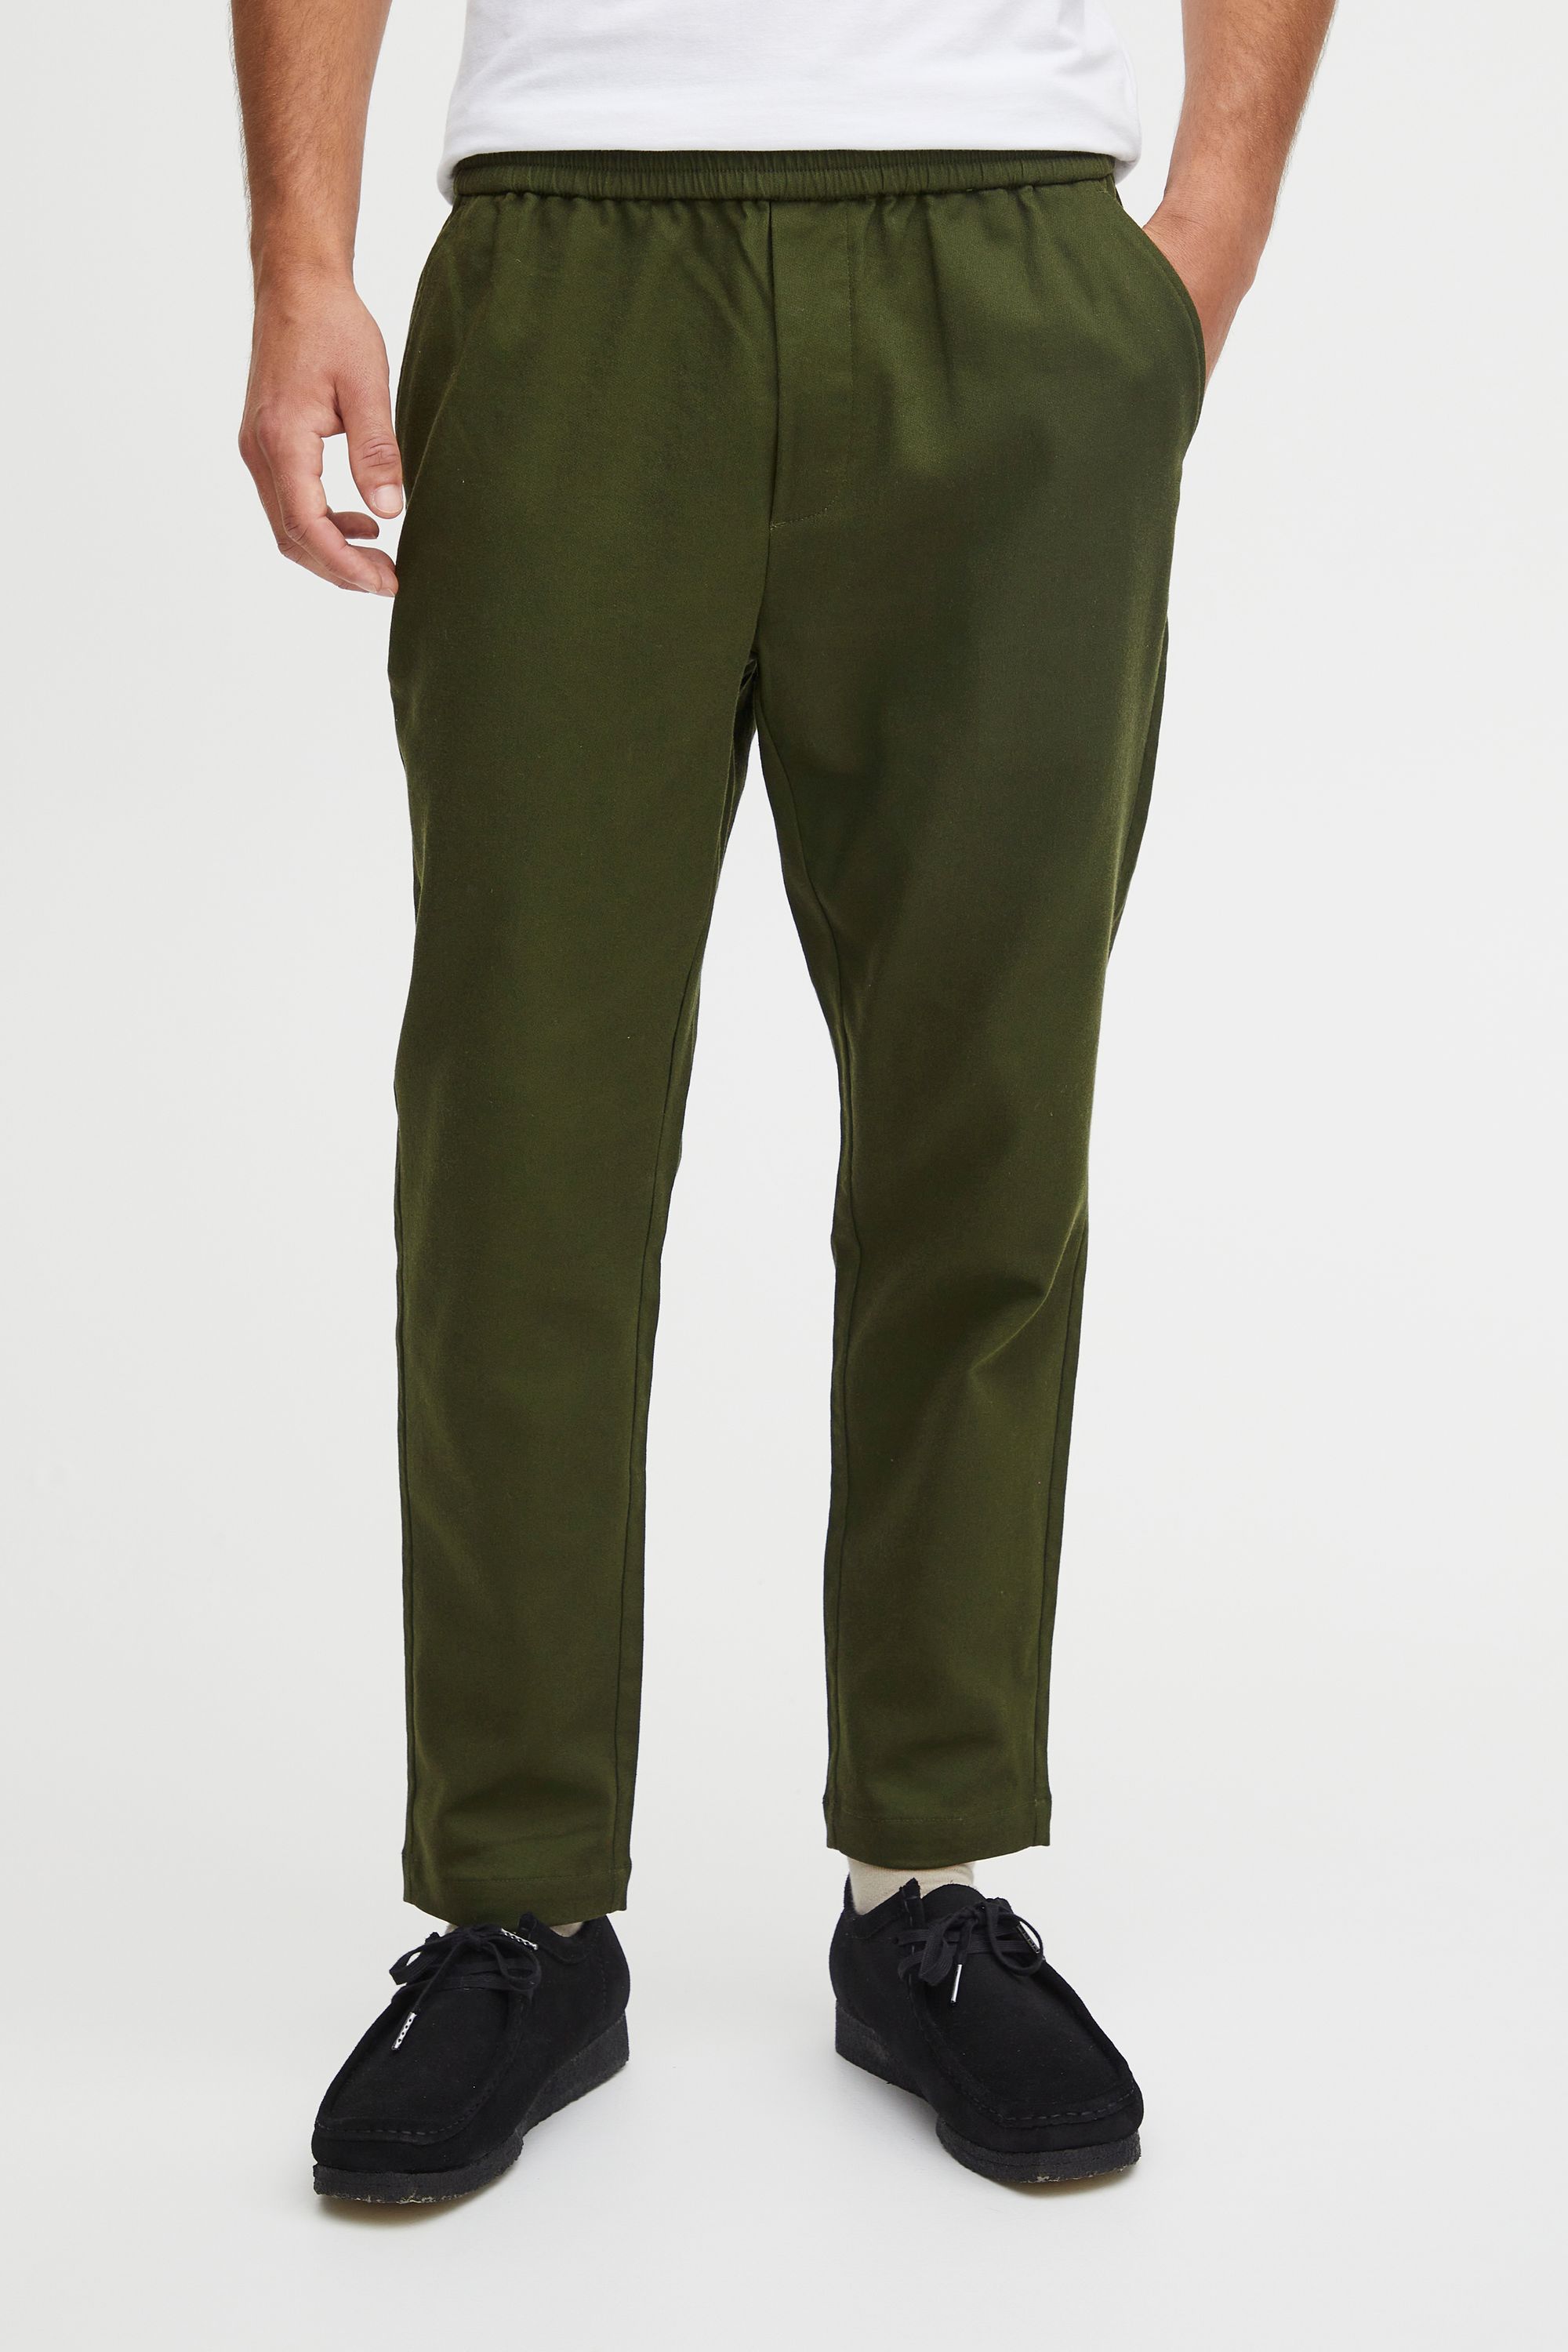 Тканевые брюки CASUAL FRIDAY Stoff CFGus 0091 jersey pants 20504819, зеленый